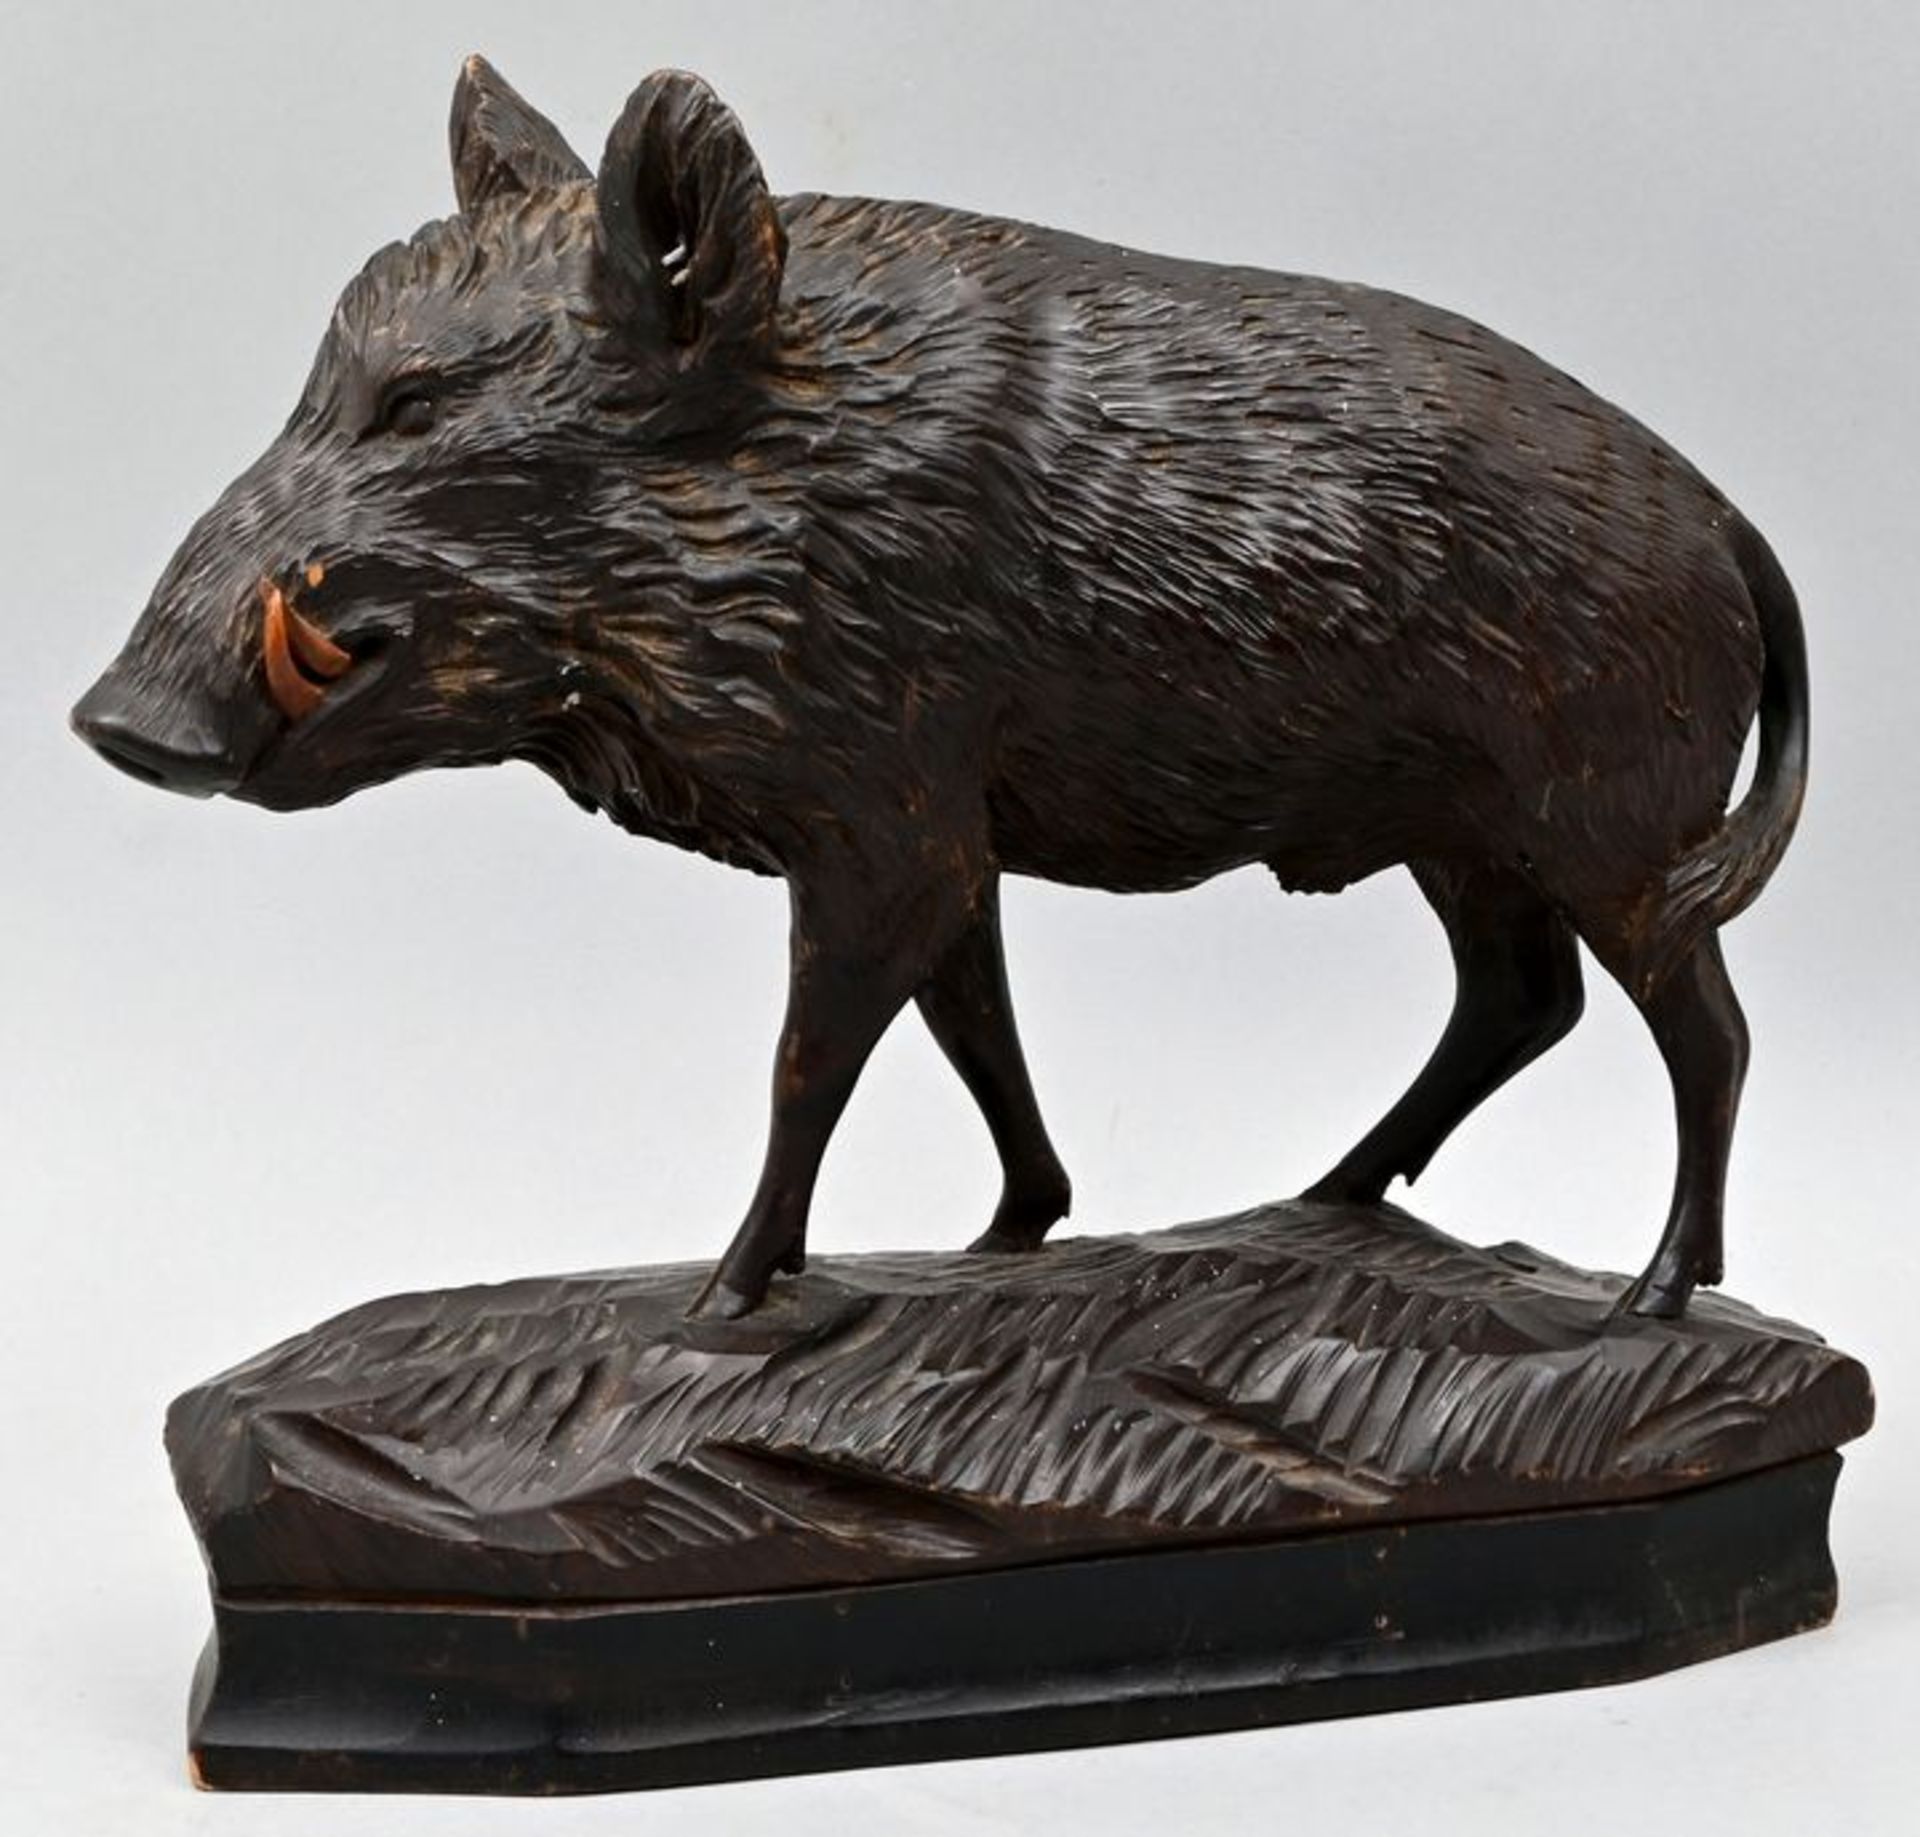 Russischer Künstler (?) Wildschwein geschnitzt / Wooden sculpture